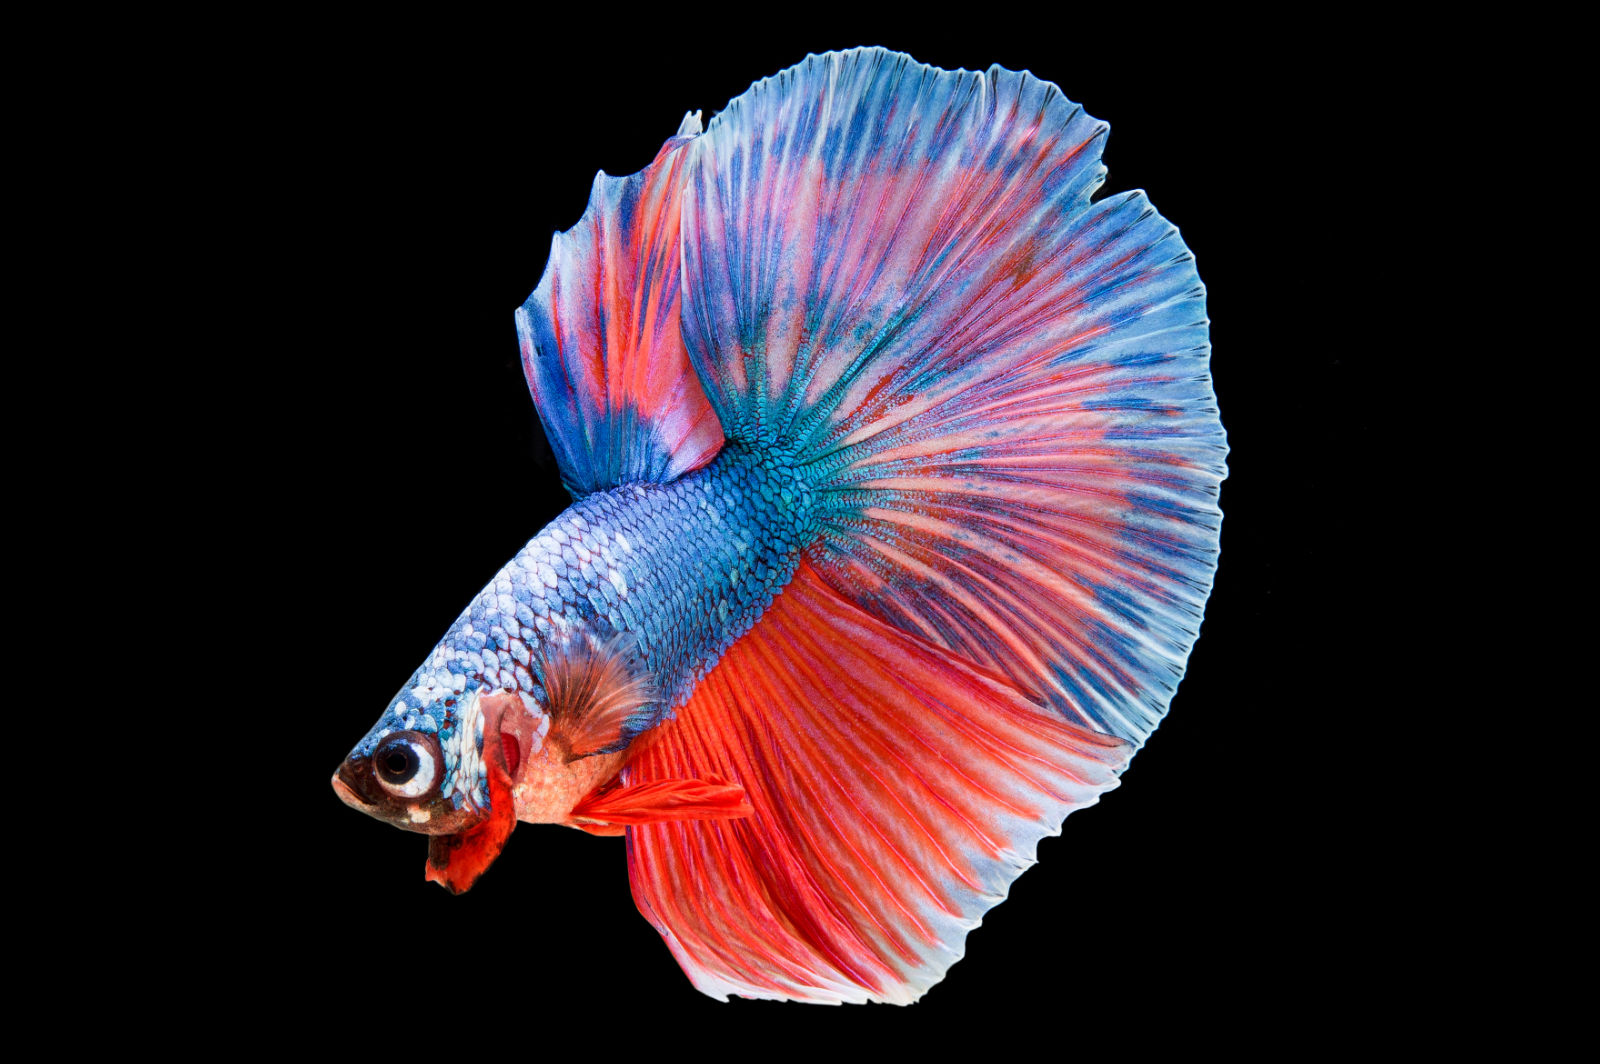 Pesce combattente (Betta splendens) - blu e rosso